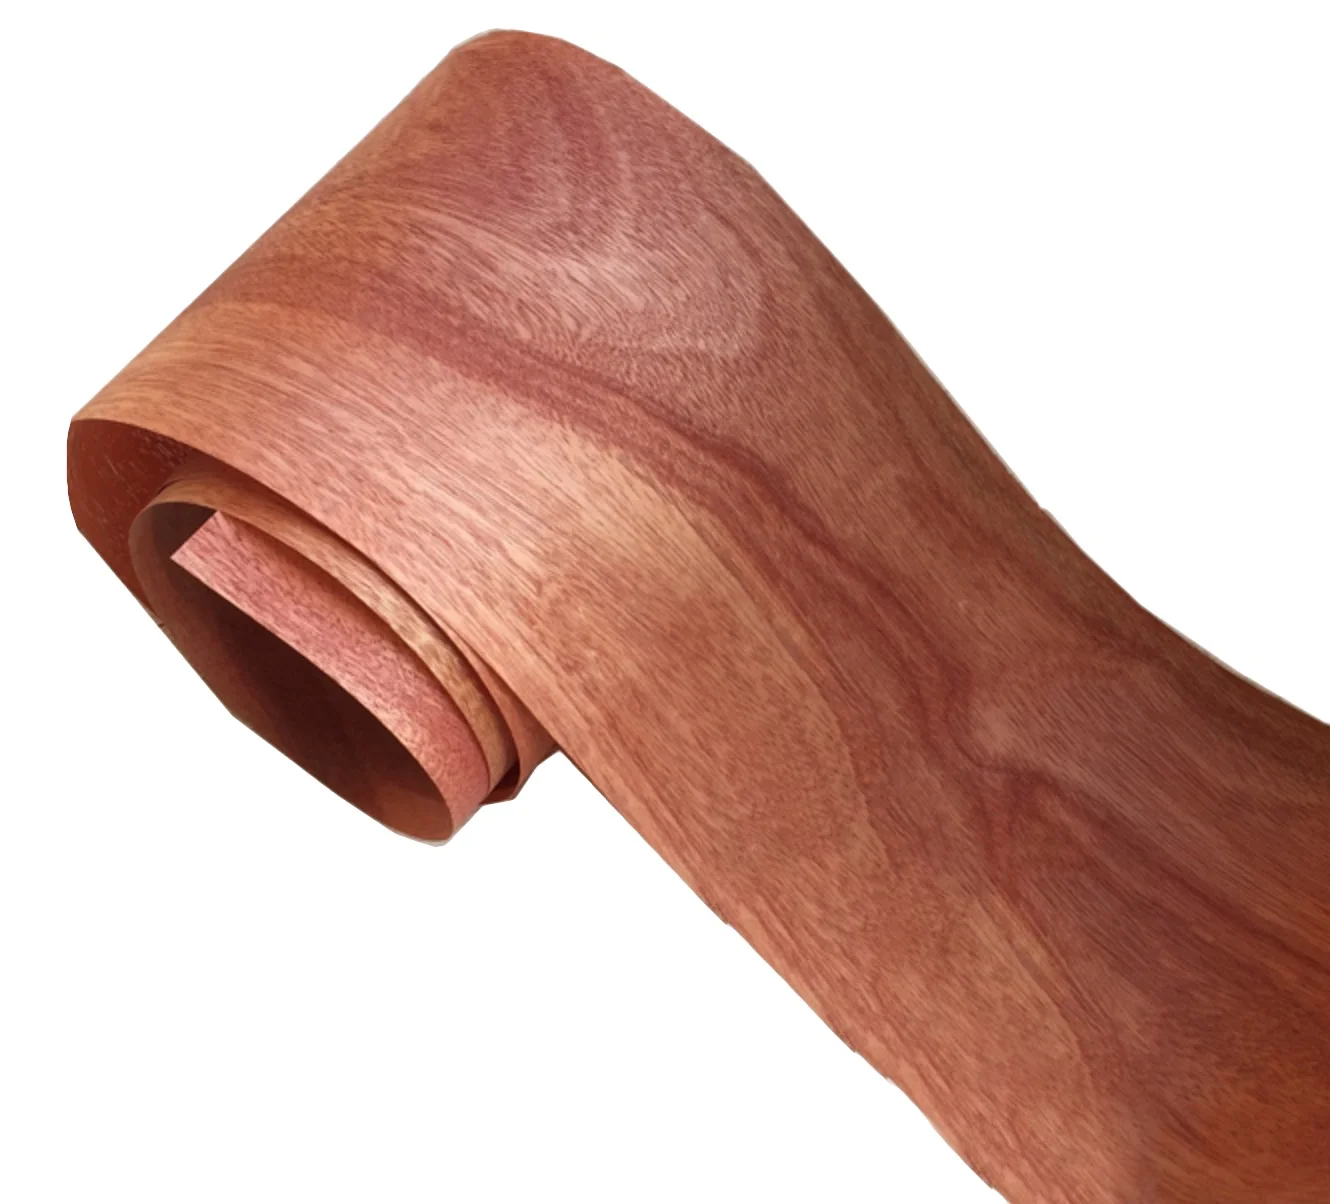 5 шт. Длина: 2,5 метра Толщина: 0,25 мм ширина: 18 см натуральный древесный шпон с сердечником персика настоящие деревянные листы от AliExpress WW